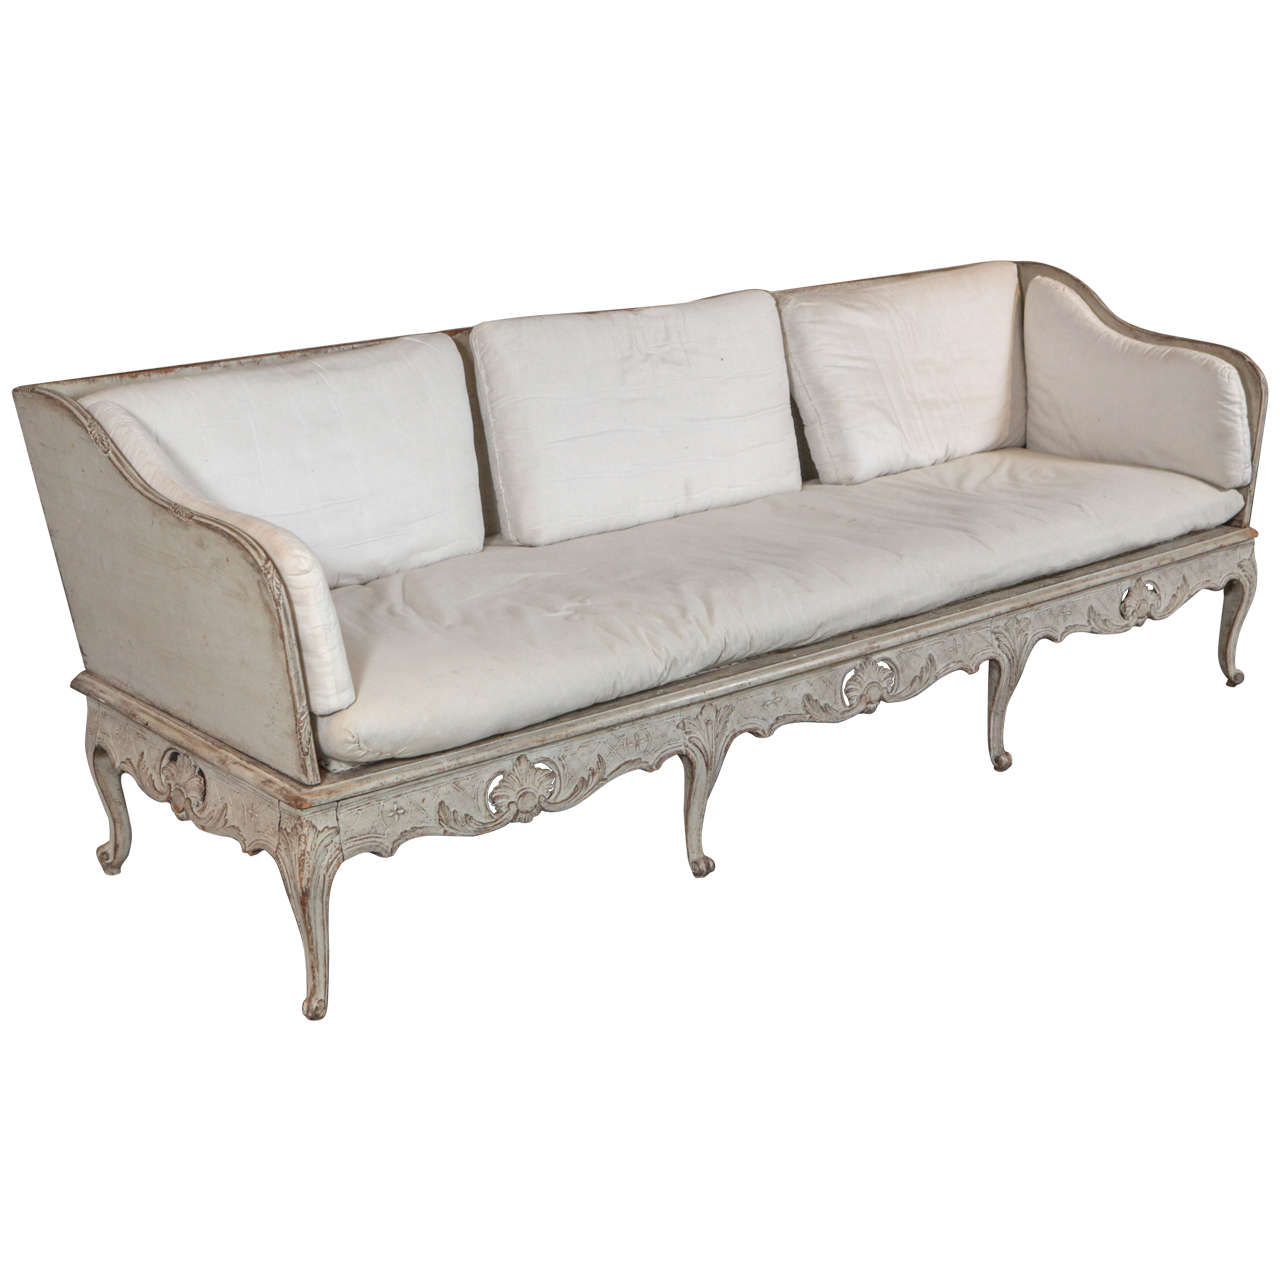 Swedish Rococo sofa, 1850s